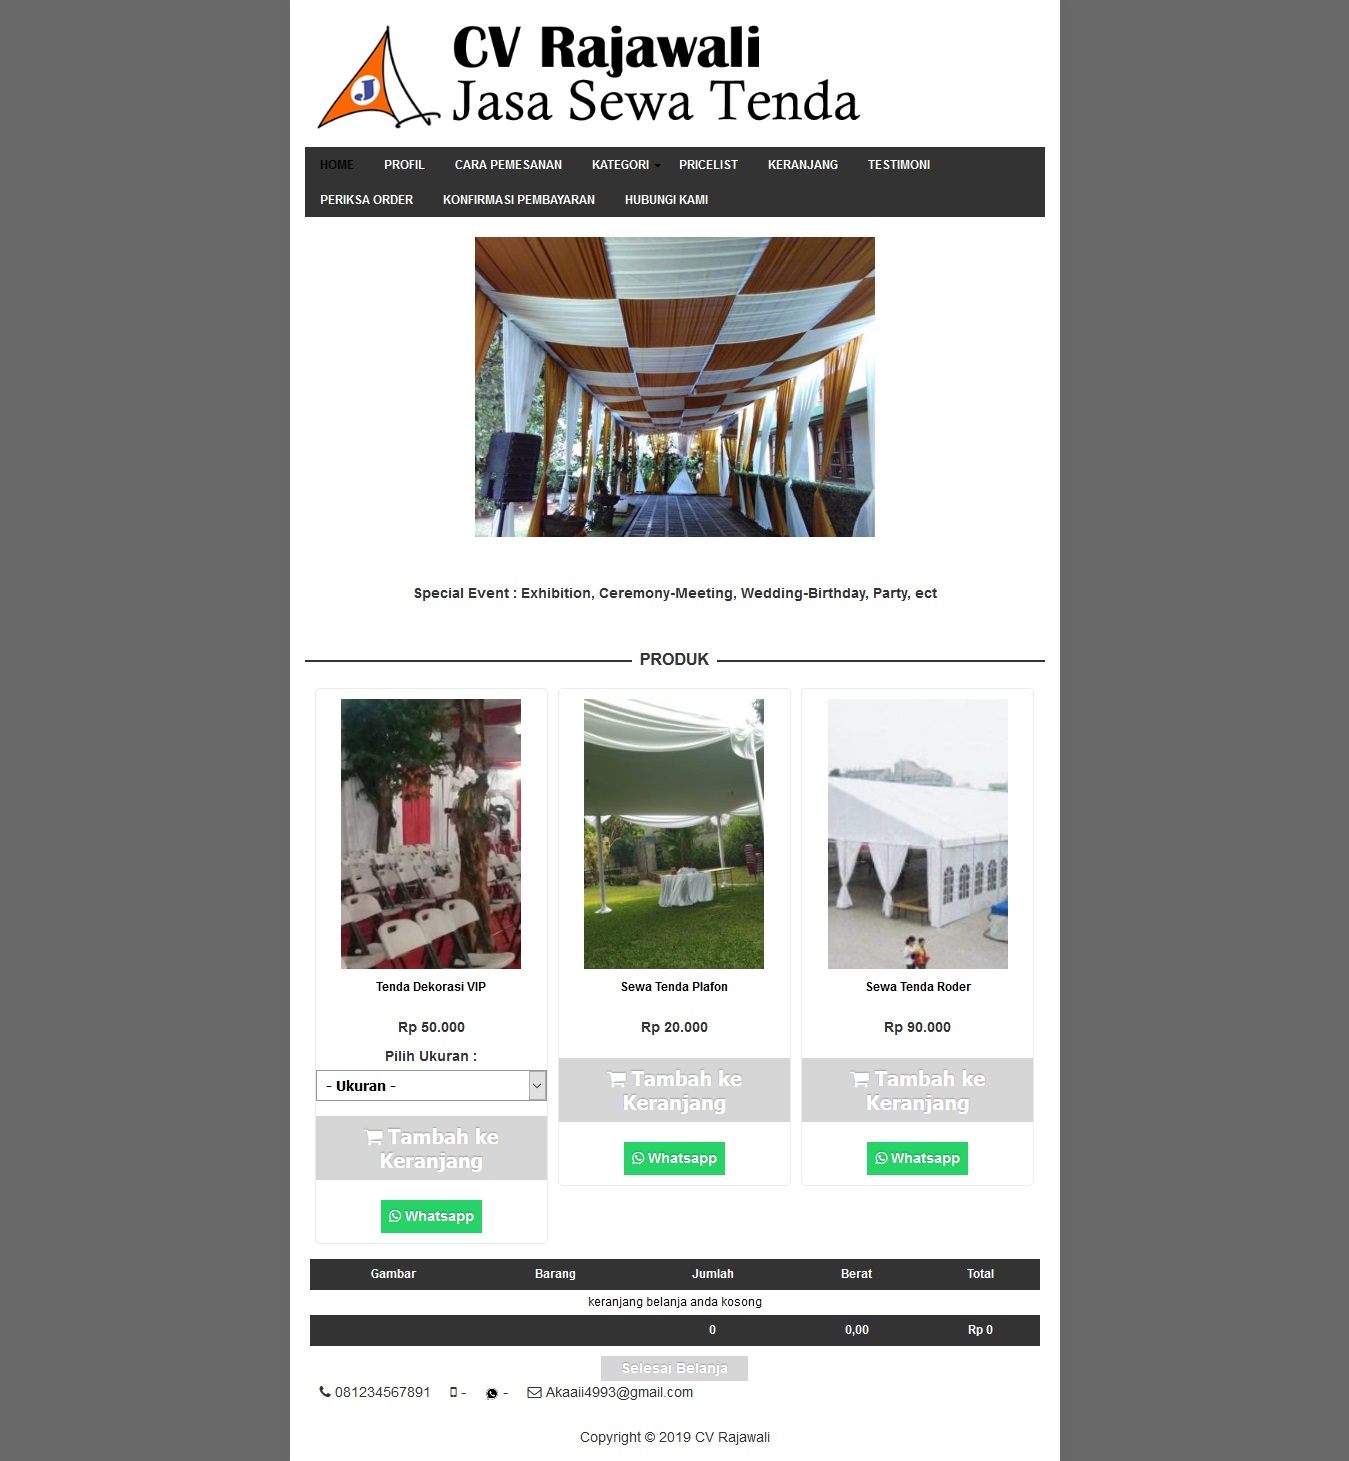 Buat Website Murah Semarang